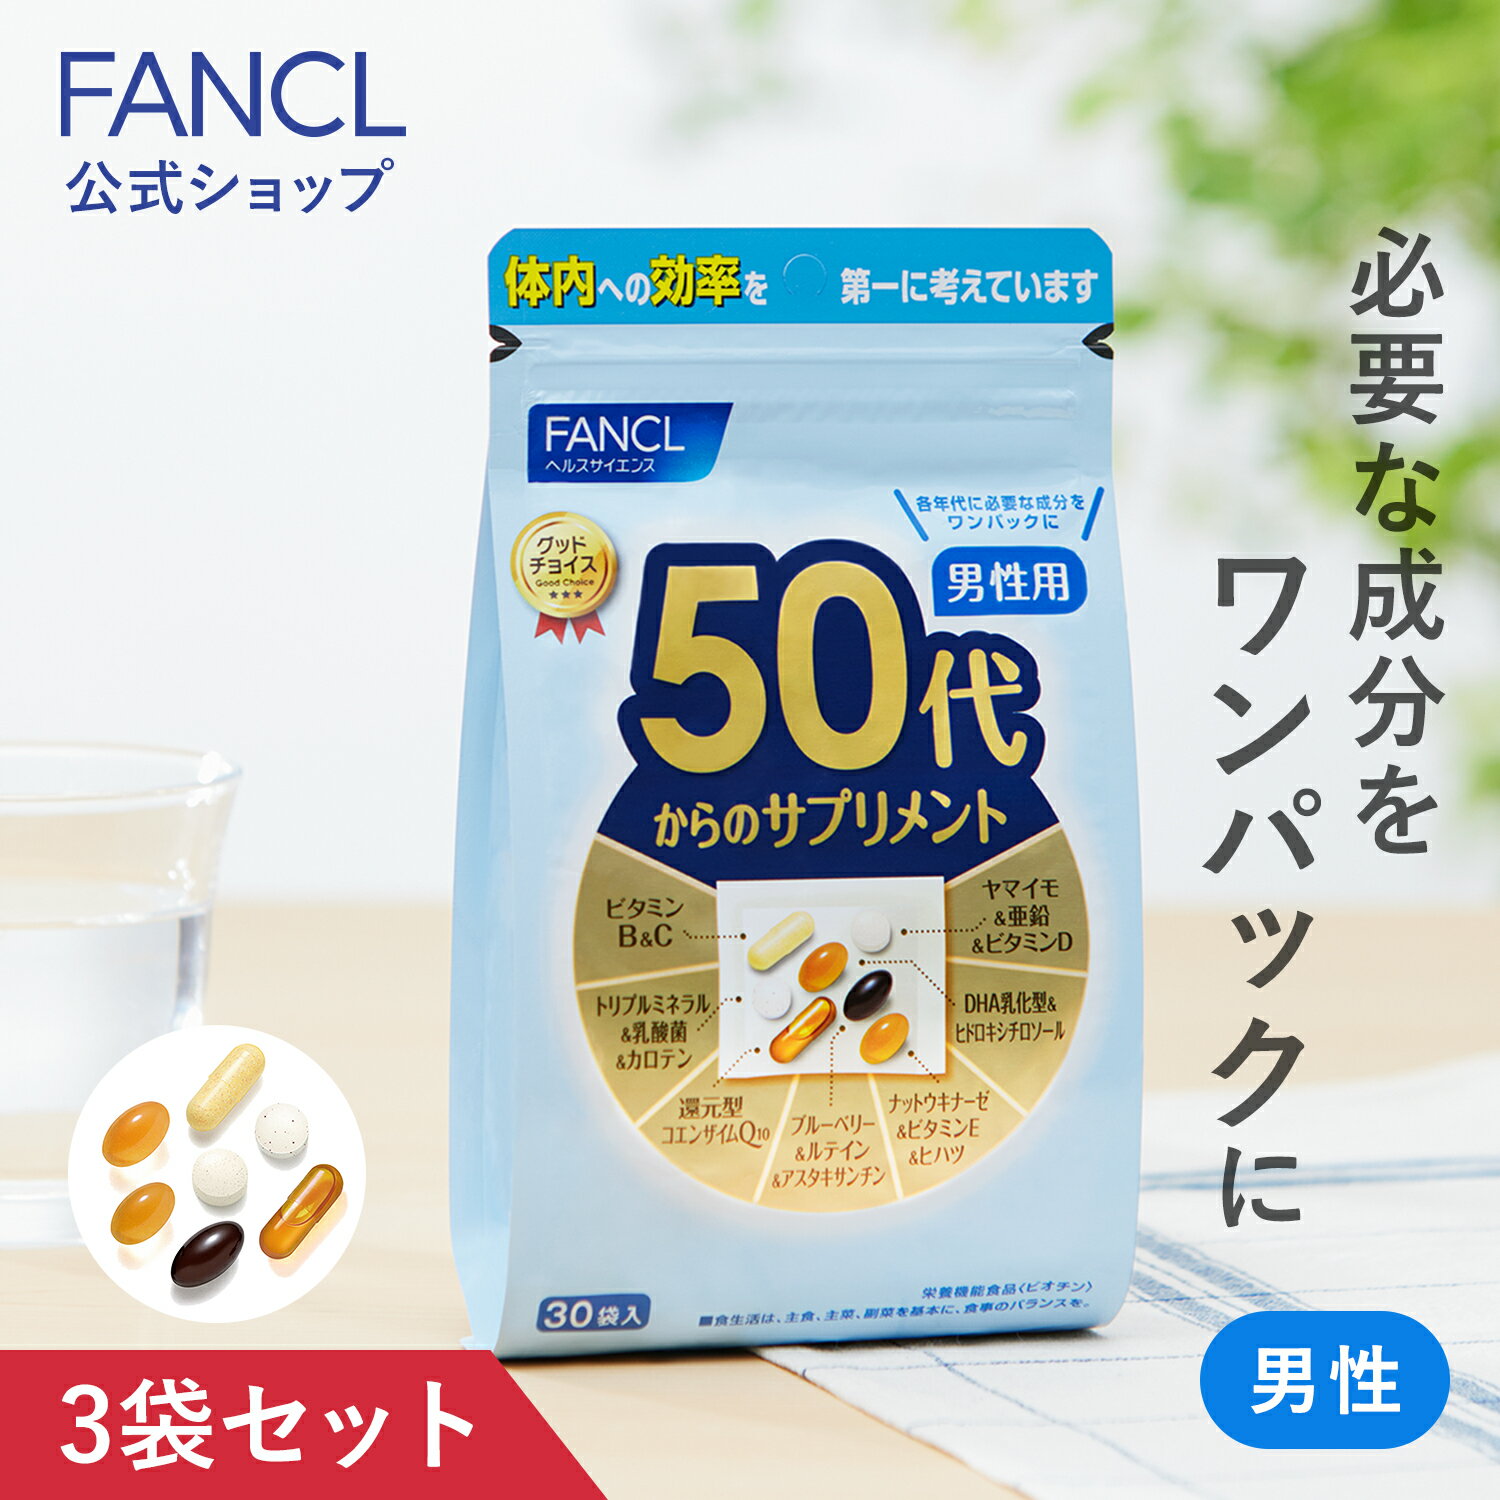 ファンケル 60代からのサプリメント 男性用(7粒*30袋入)【ファンケル】